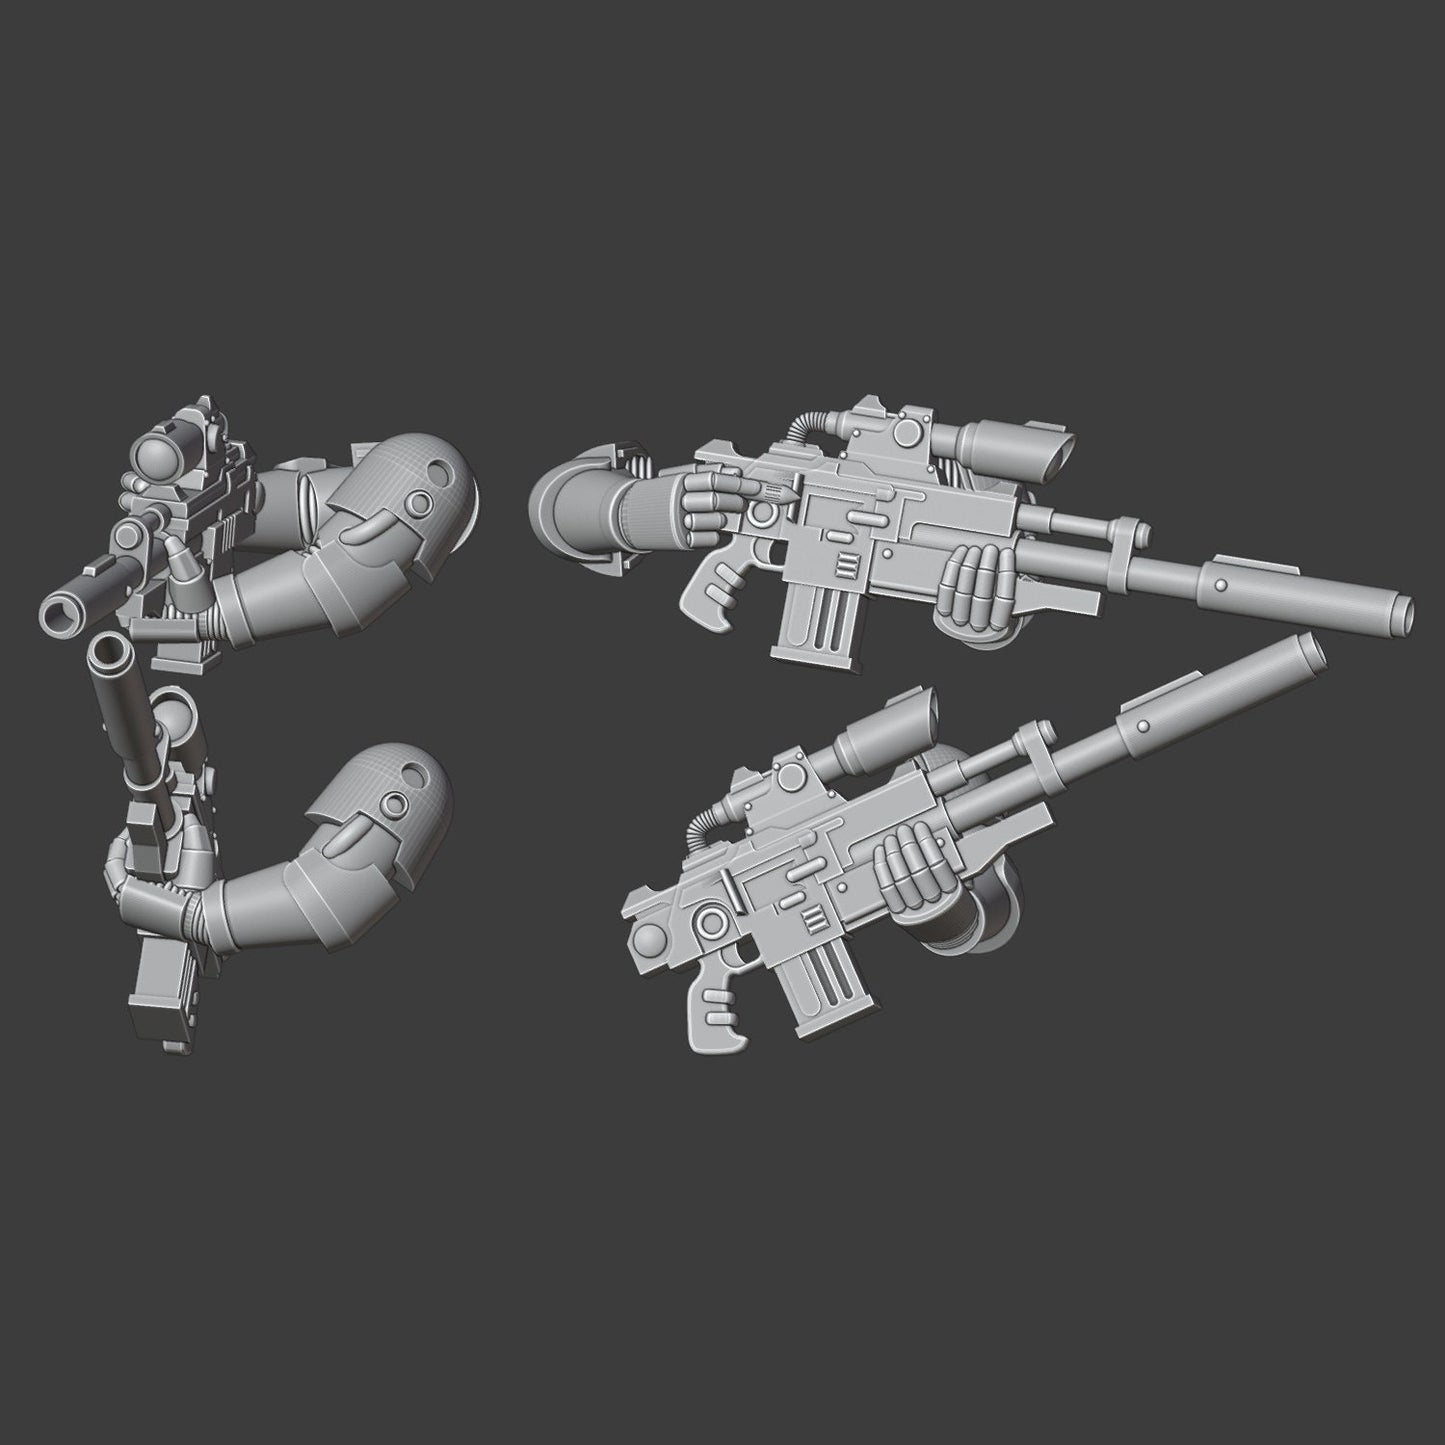 Heresy Gen 6 Sniper Team Arms x10 (Custom Order)